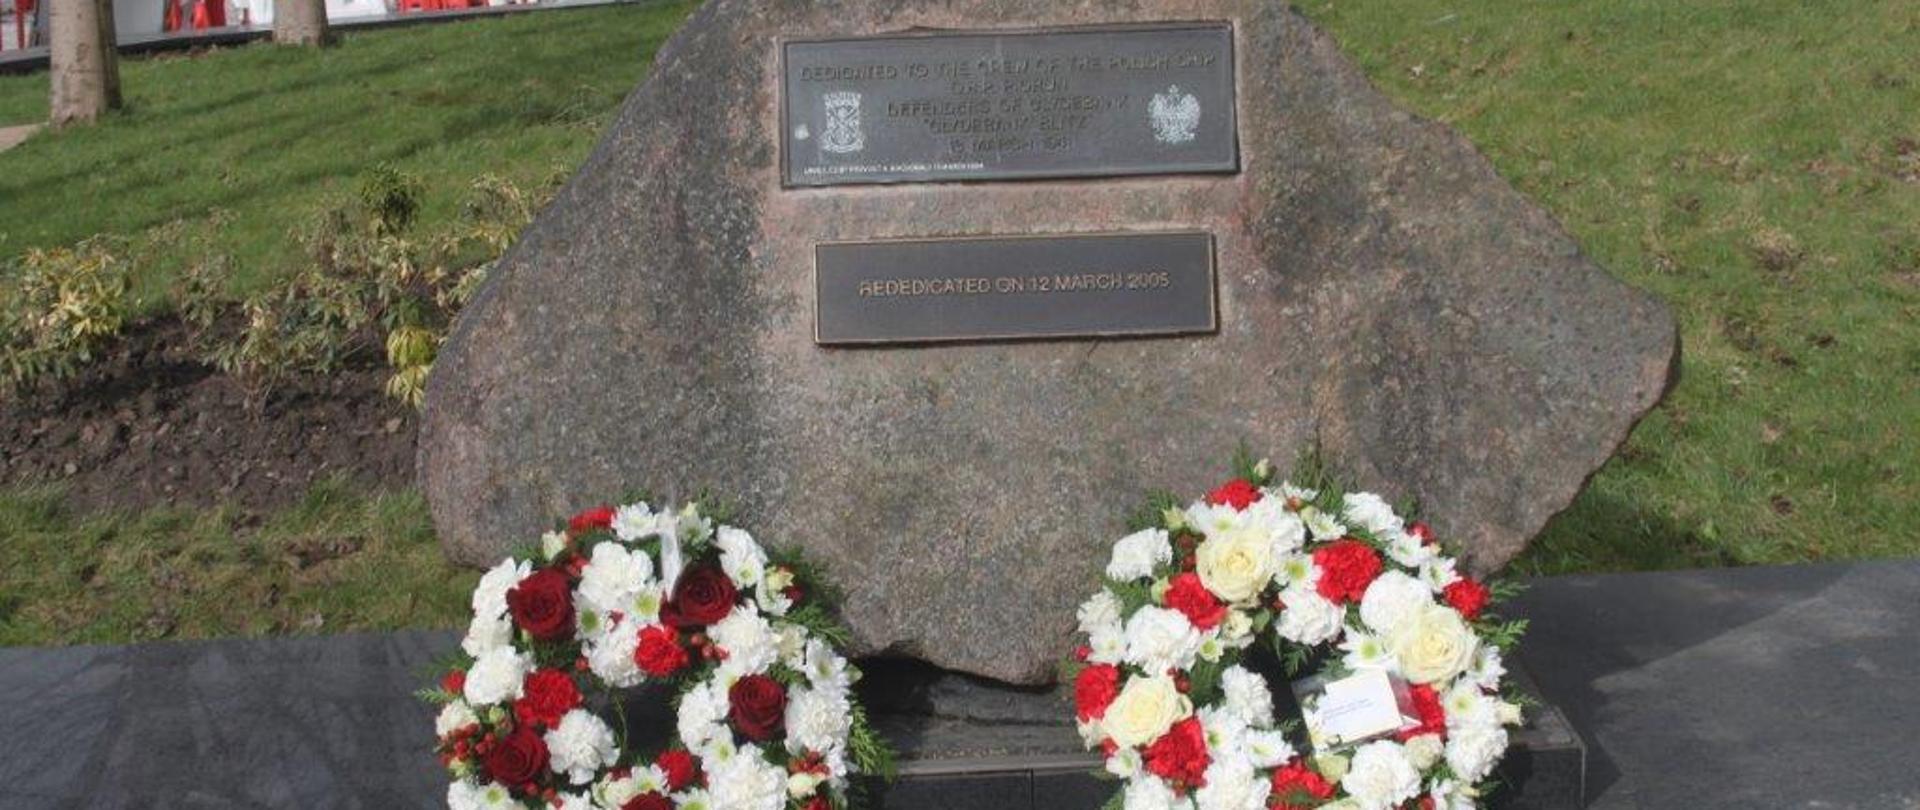 Memorial to ORP Piorun in Clydebank